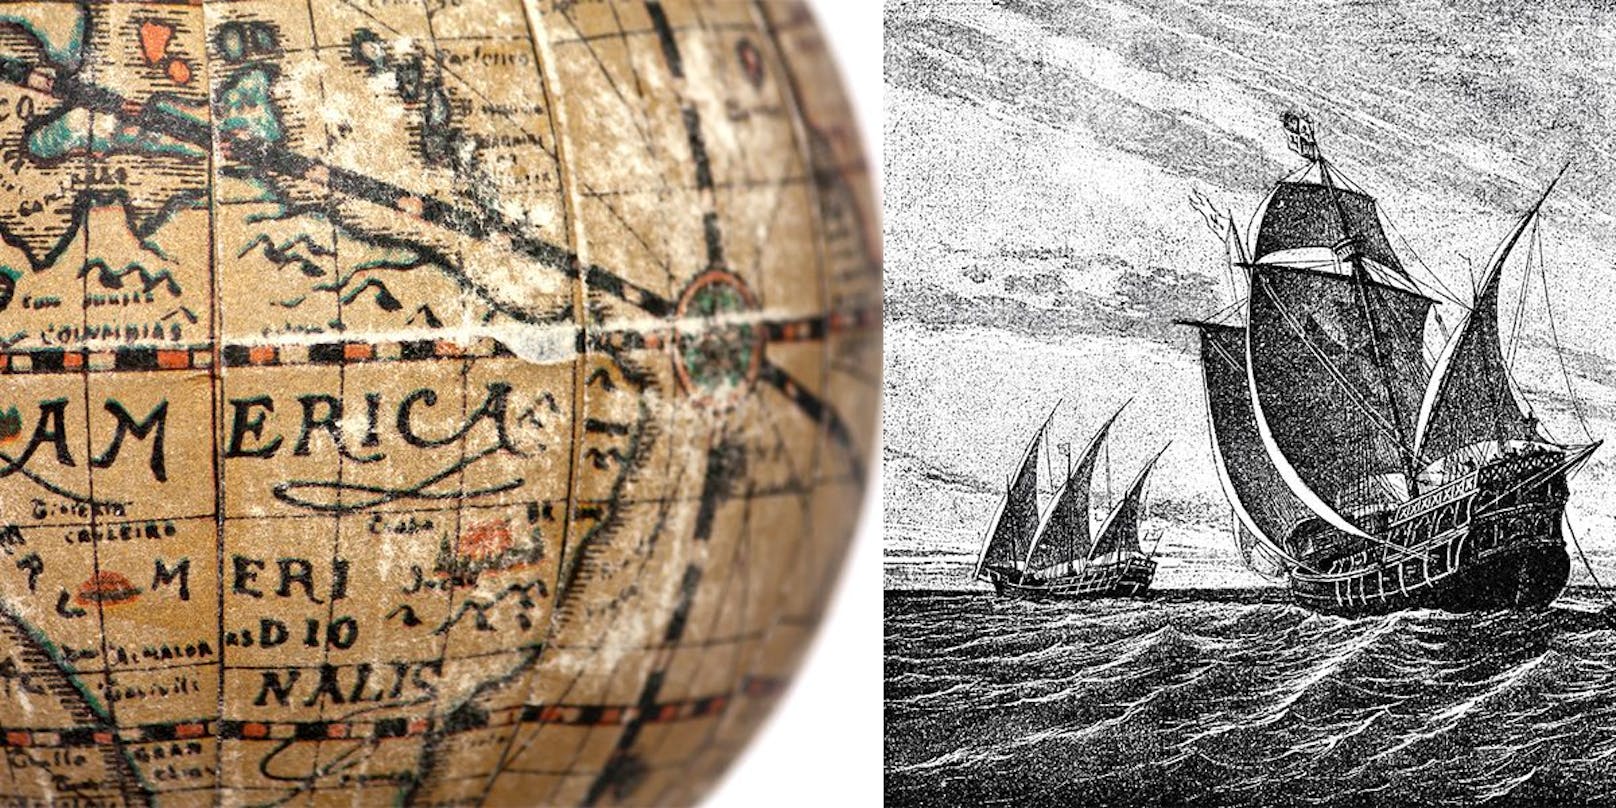 Bislang galt Christoph Columbus als Entdecker Amerikas, als er 1492 einen Seeweg nach Asien finden wollte. Die Europäer eroberten Amerika und brachten Millionen der Ureinwohner um.